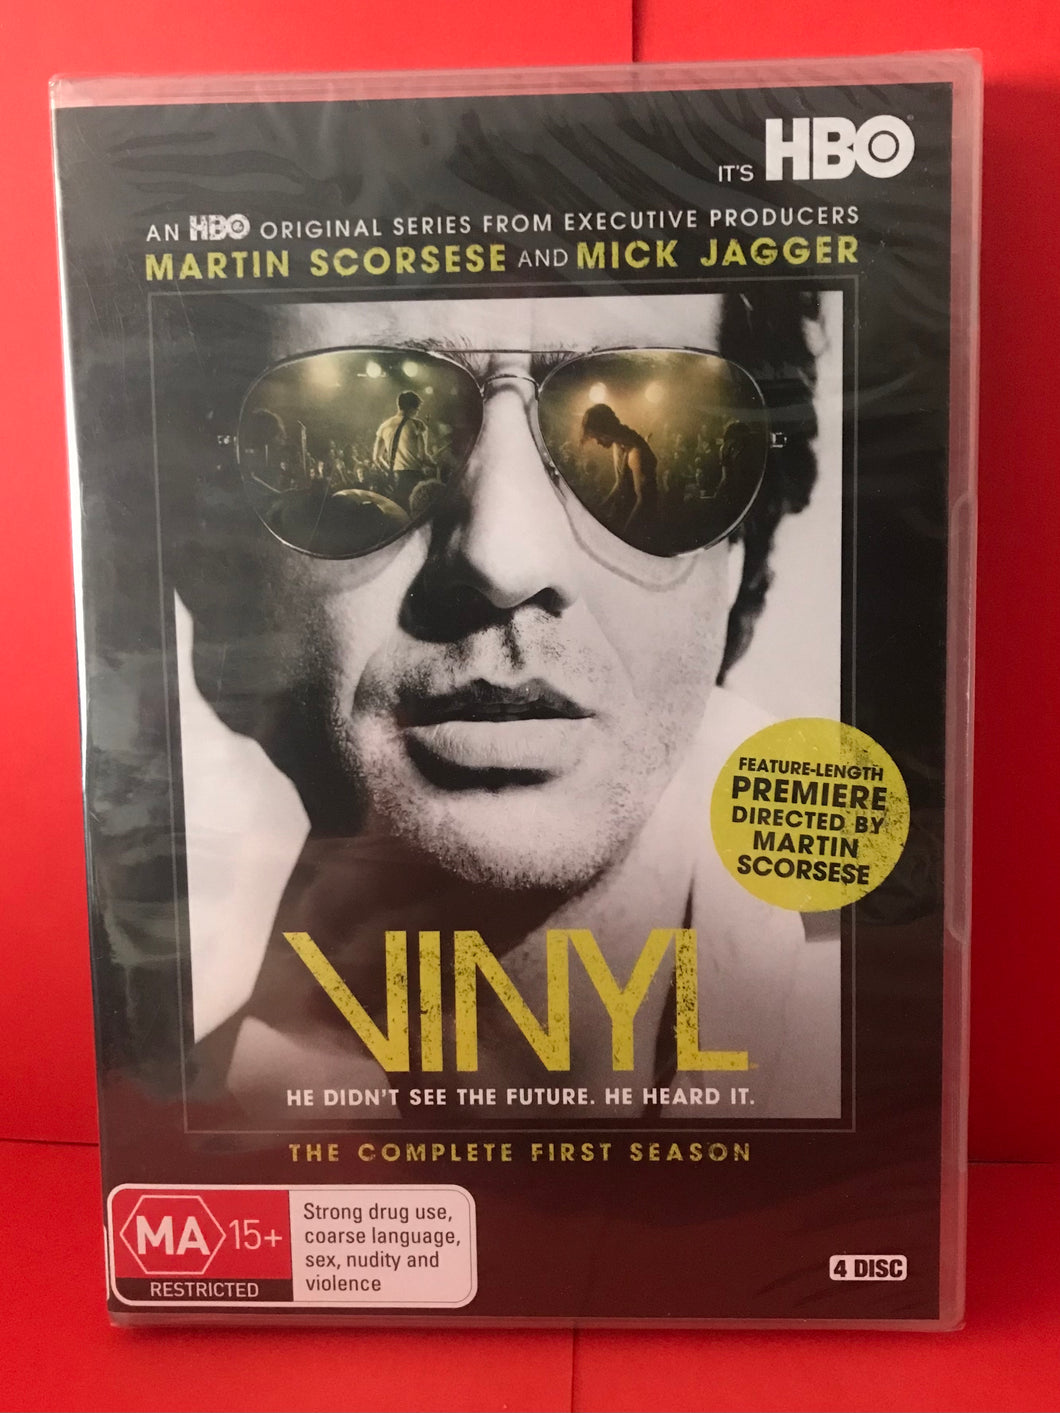 VINYL SEASON 1 DVD